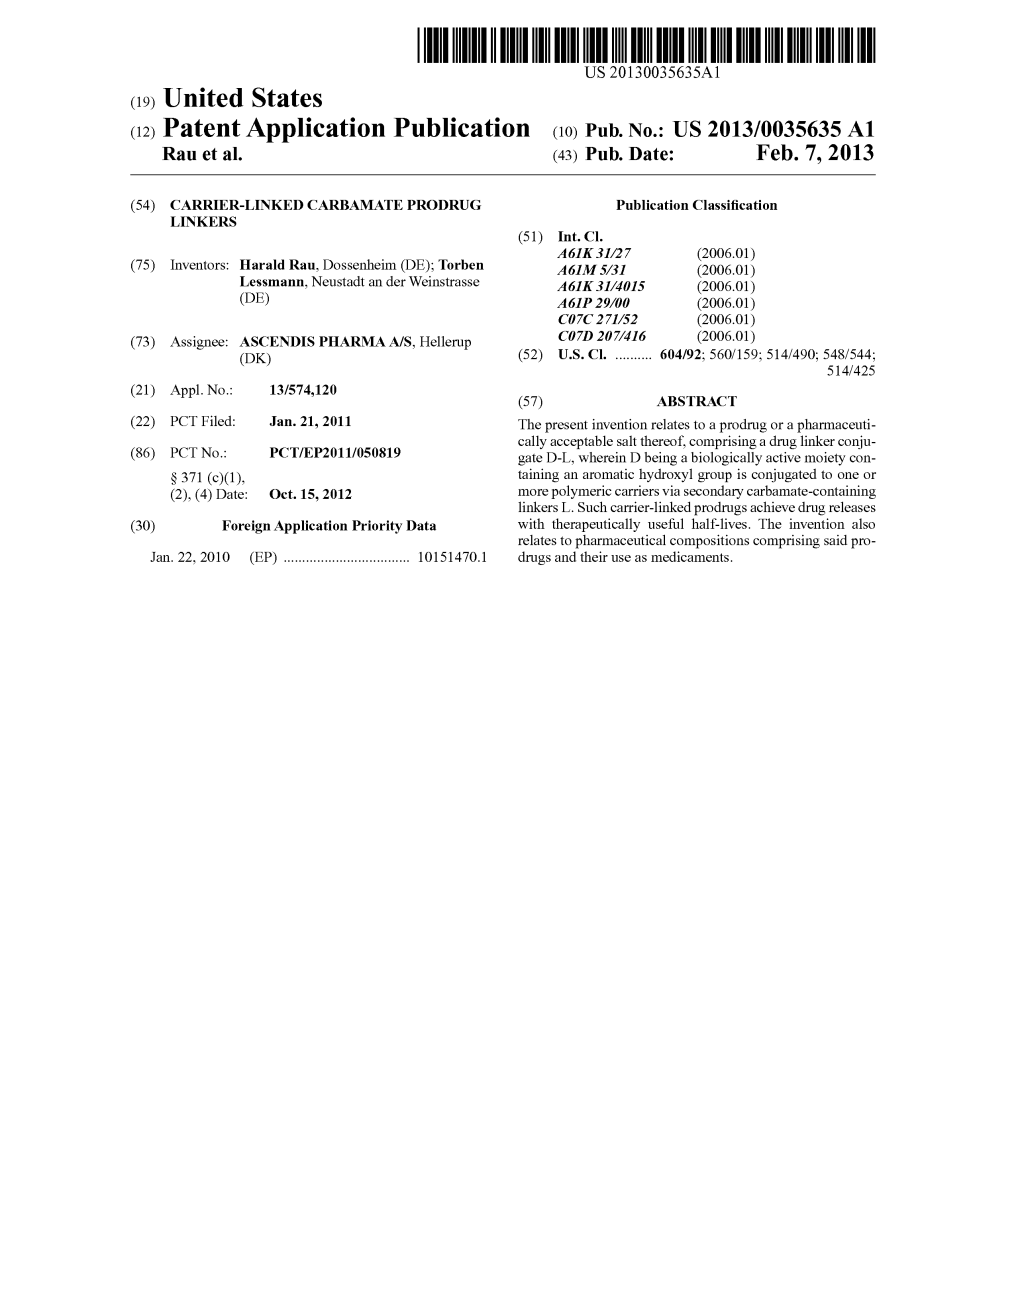 (12) Patent Application Publication (10) Pub. No.: US 2013/0035635 A1 Rau Et Al